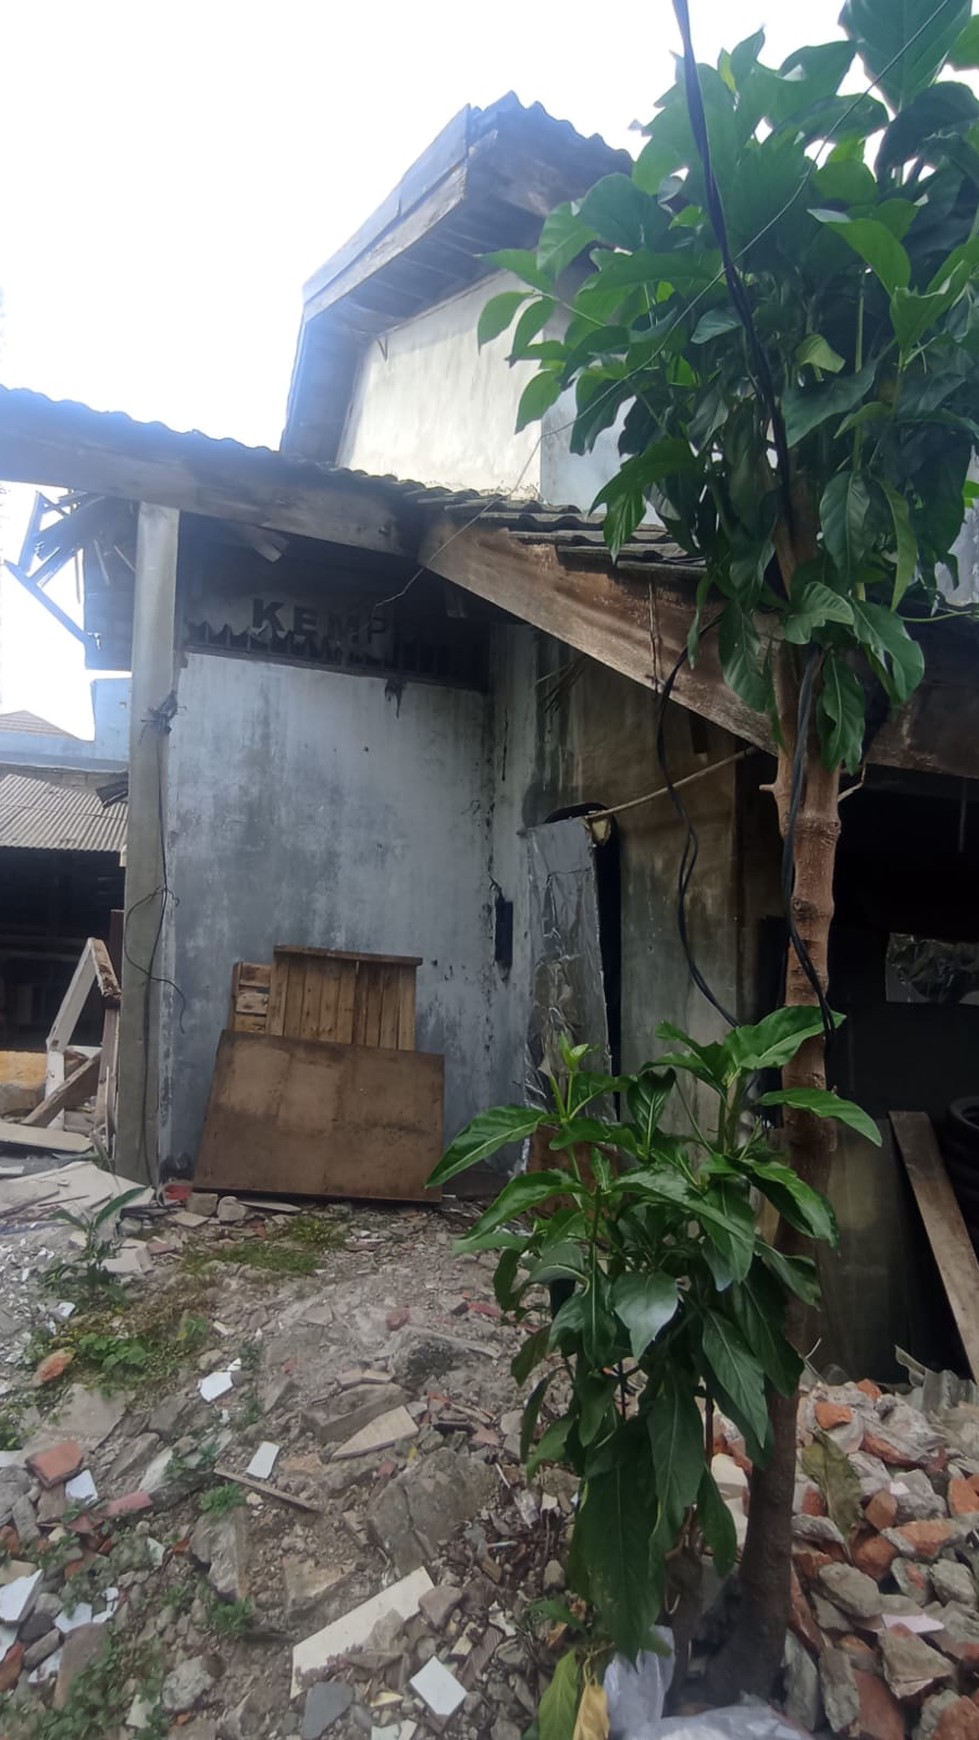 Dijual rumah perlu renovasi di Jl. Prabu Siliwangi, Perumnas 4 Karawaci - Tangerang